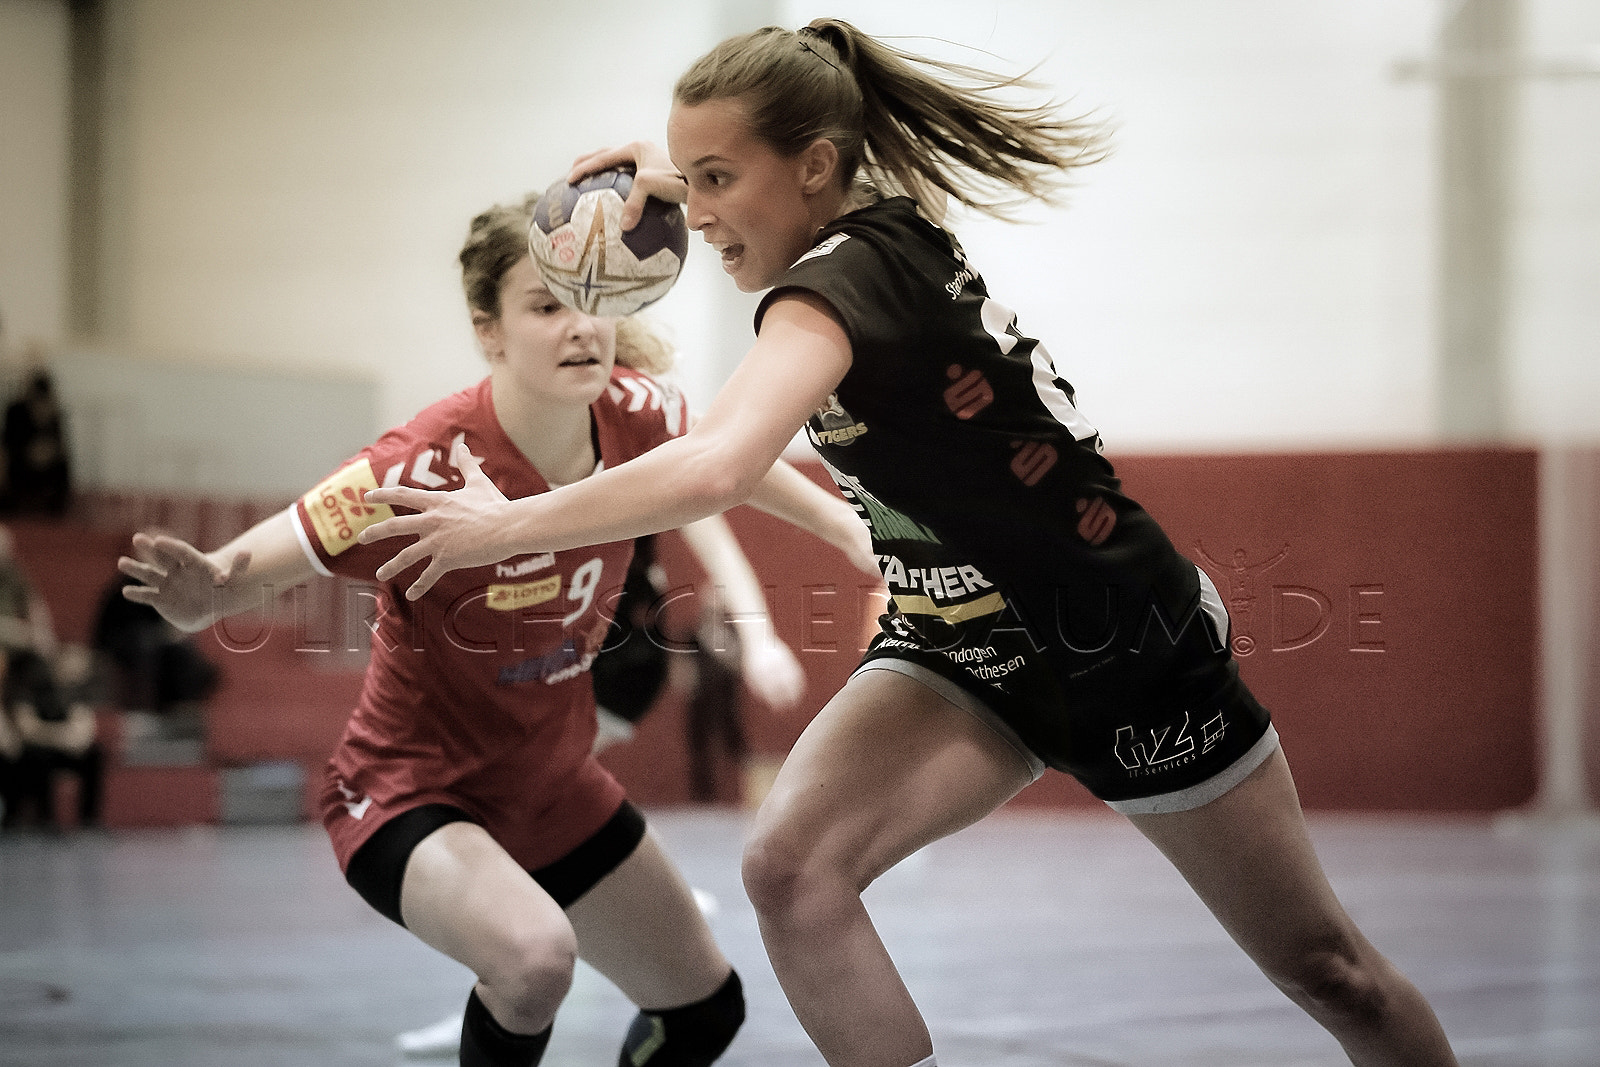 2018 HANNA22 - VfL Waiblingen Handball